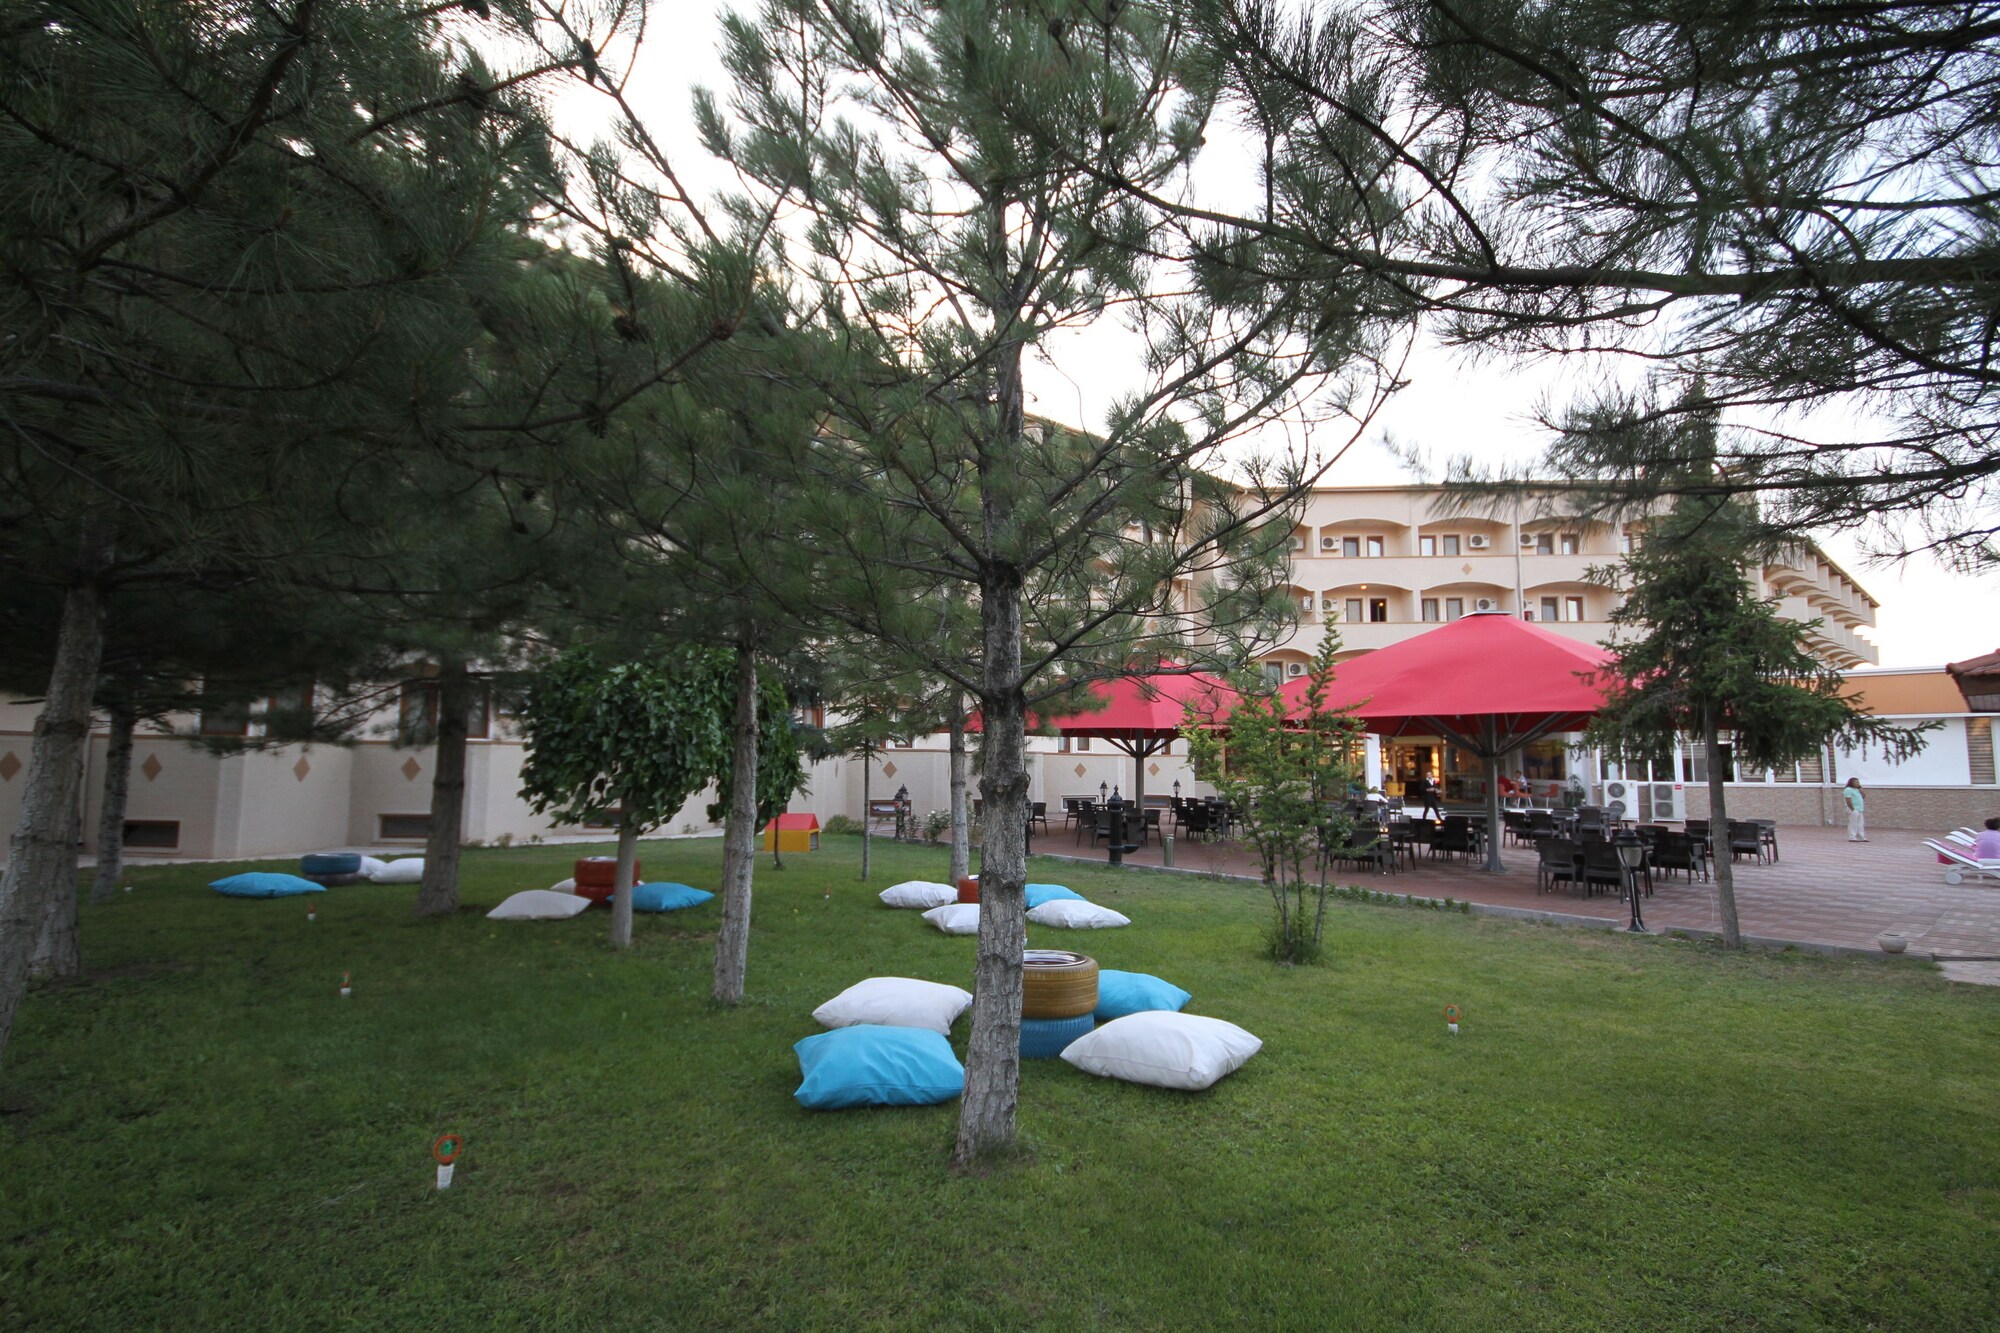 By Cappadocia Hotel & Spa